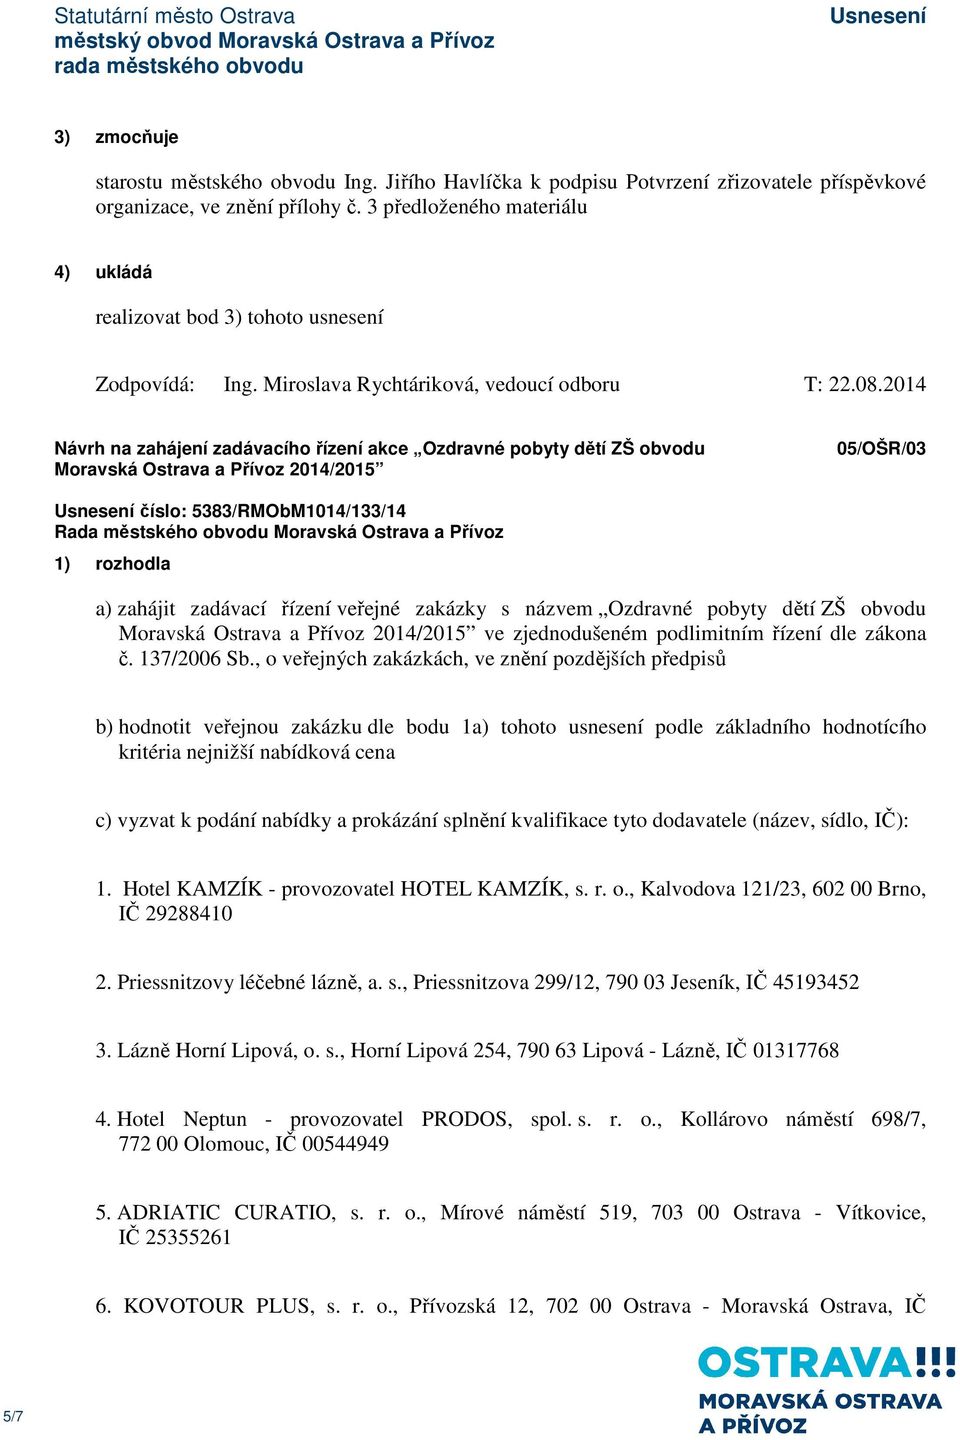 2014 Návrh na zahájení zadávacího řízení akce Ozdravné pobyty dětí ZŠ obvodu Moravská Ostrava a Přívoz 2014/2015 05/OŠR/03 číslo: 5383/RMObM1014/133/14 1) rozhodla a) zahájit zadávací řízení veřejné